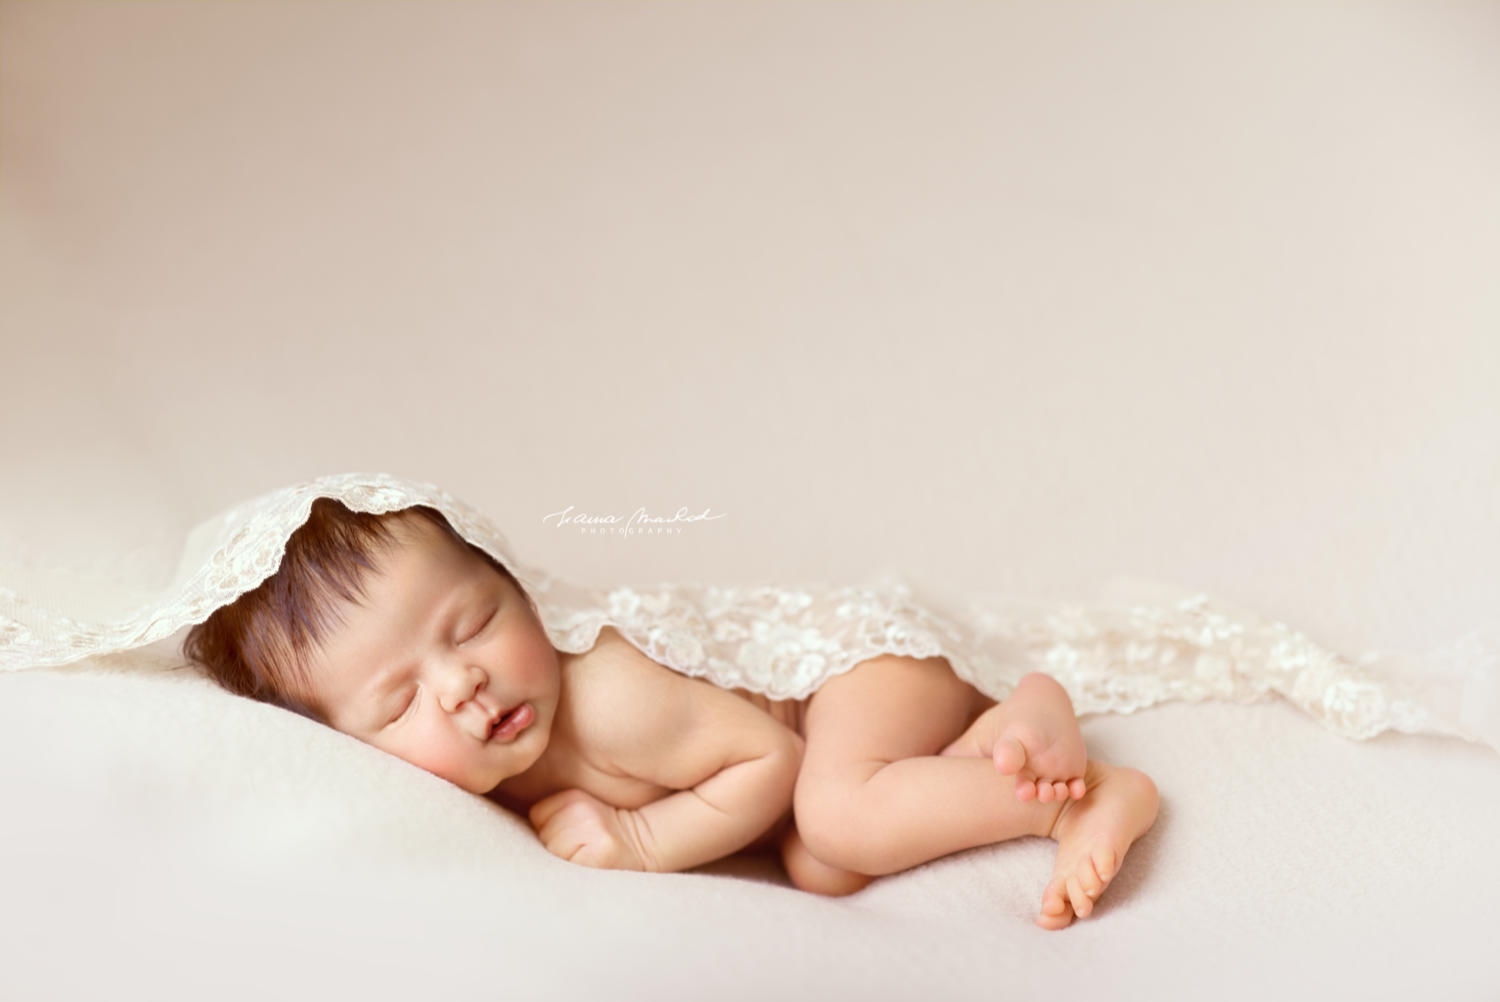 Fotografia de bebés no Porto ¦ Bebé recém nascido a dormir